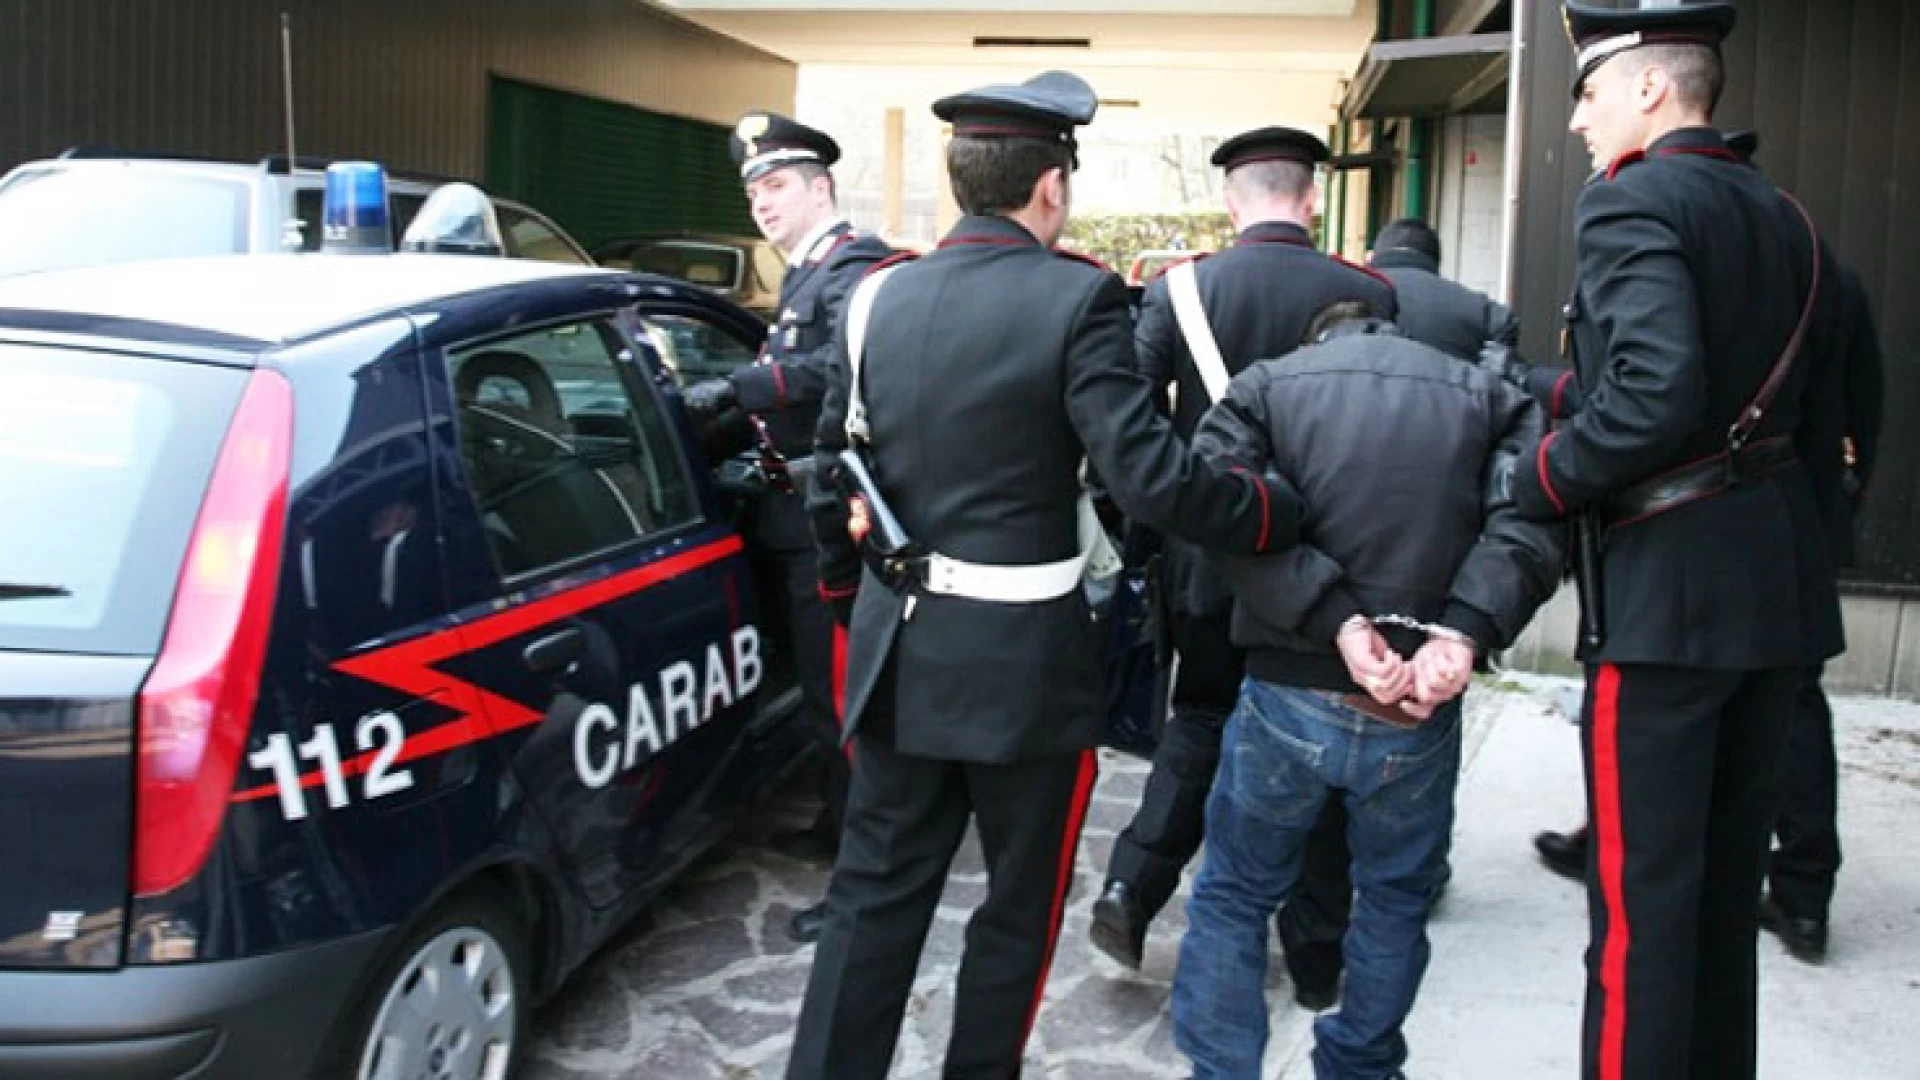 Isernia: Molestie sessuali ai danni delle pazienti, operatore sanitario denunciato dai Carabinieri e sospeso dall’impiego.